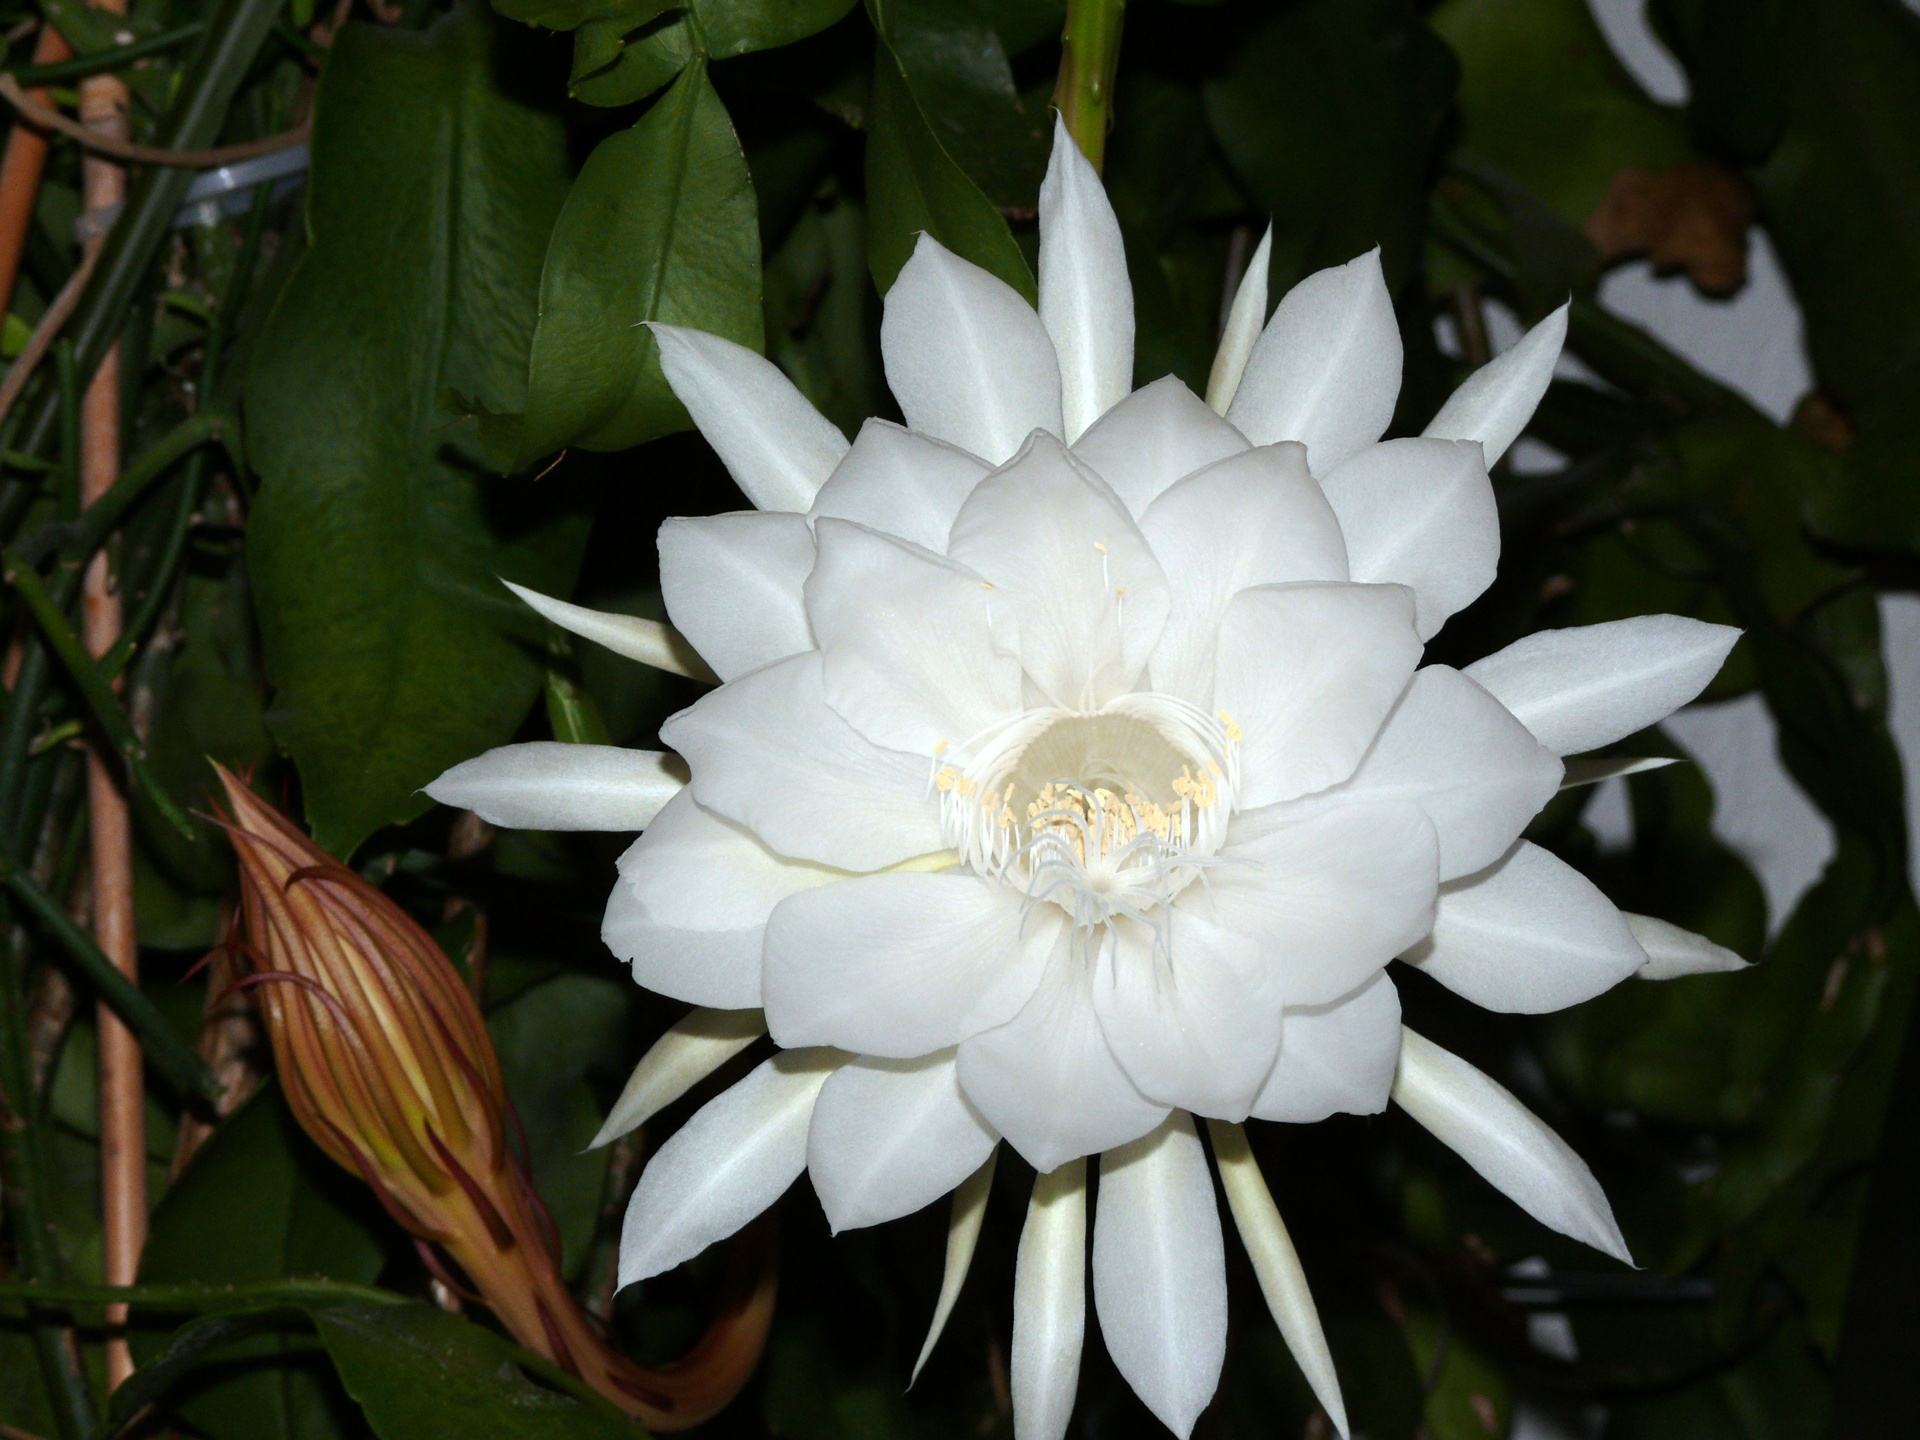 Loài hoa độc đáo quỳnh: Hoa quỳnh là một loài hoa độc đáo và rất đẹp. Nếu bạn là một người yêu hoa, hãy chiêm ngưỡng những bức ảnh về hoa quỳnh để hiểu rõ hơn về loài hoa này. Bạn sẽ bị thu hút bởi vẻ đẹp độc đáo và thanh tịnh của nó.